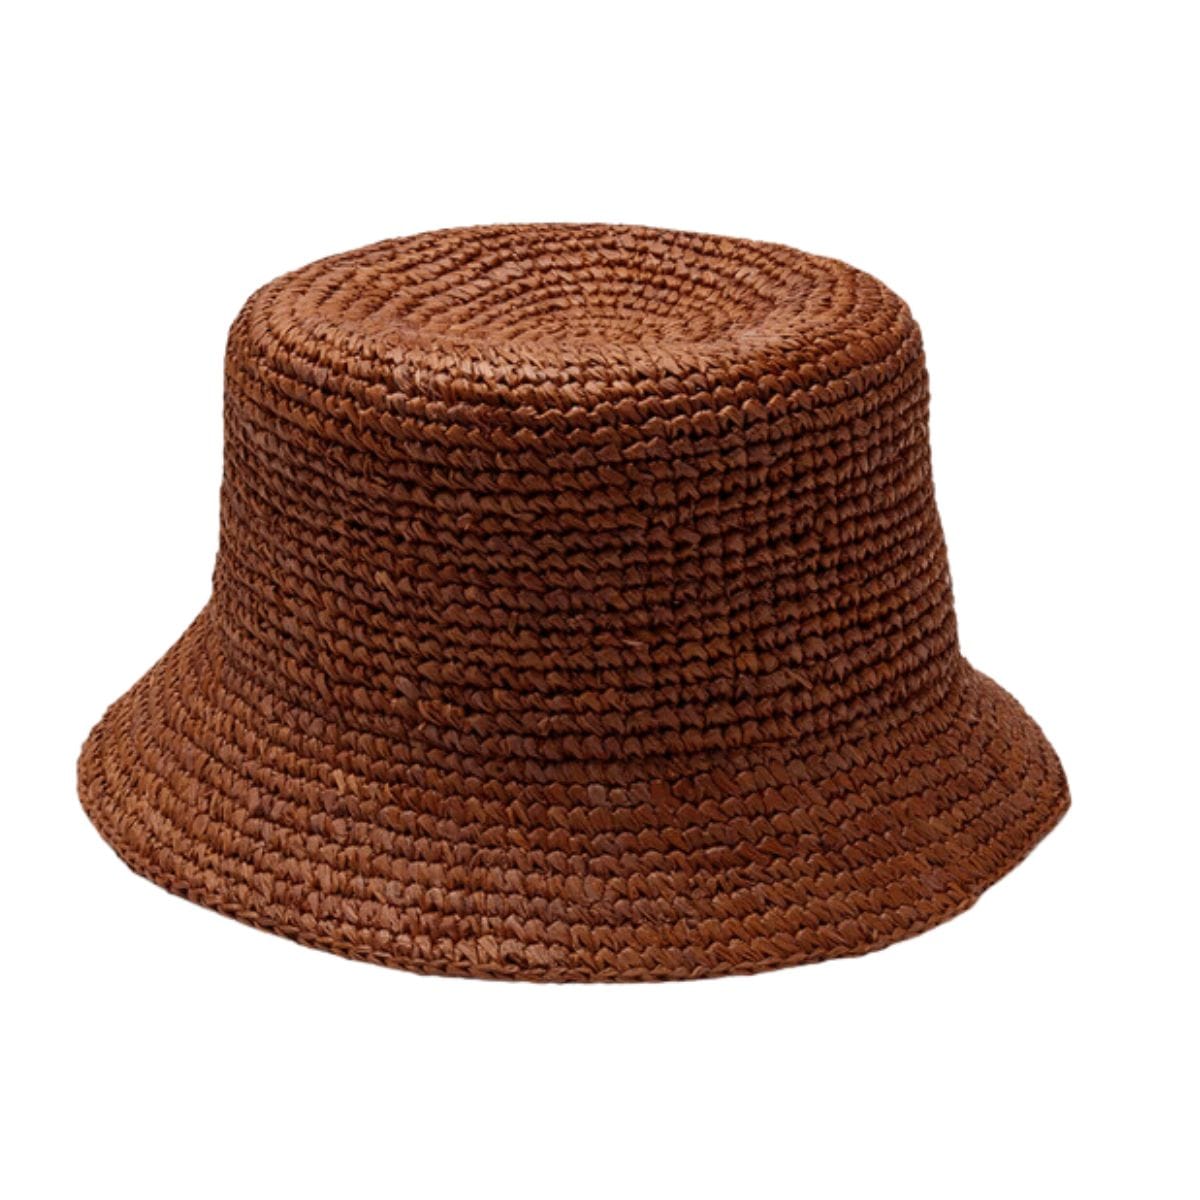 Aden Bucket Hat (Chocolate)